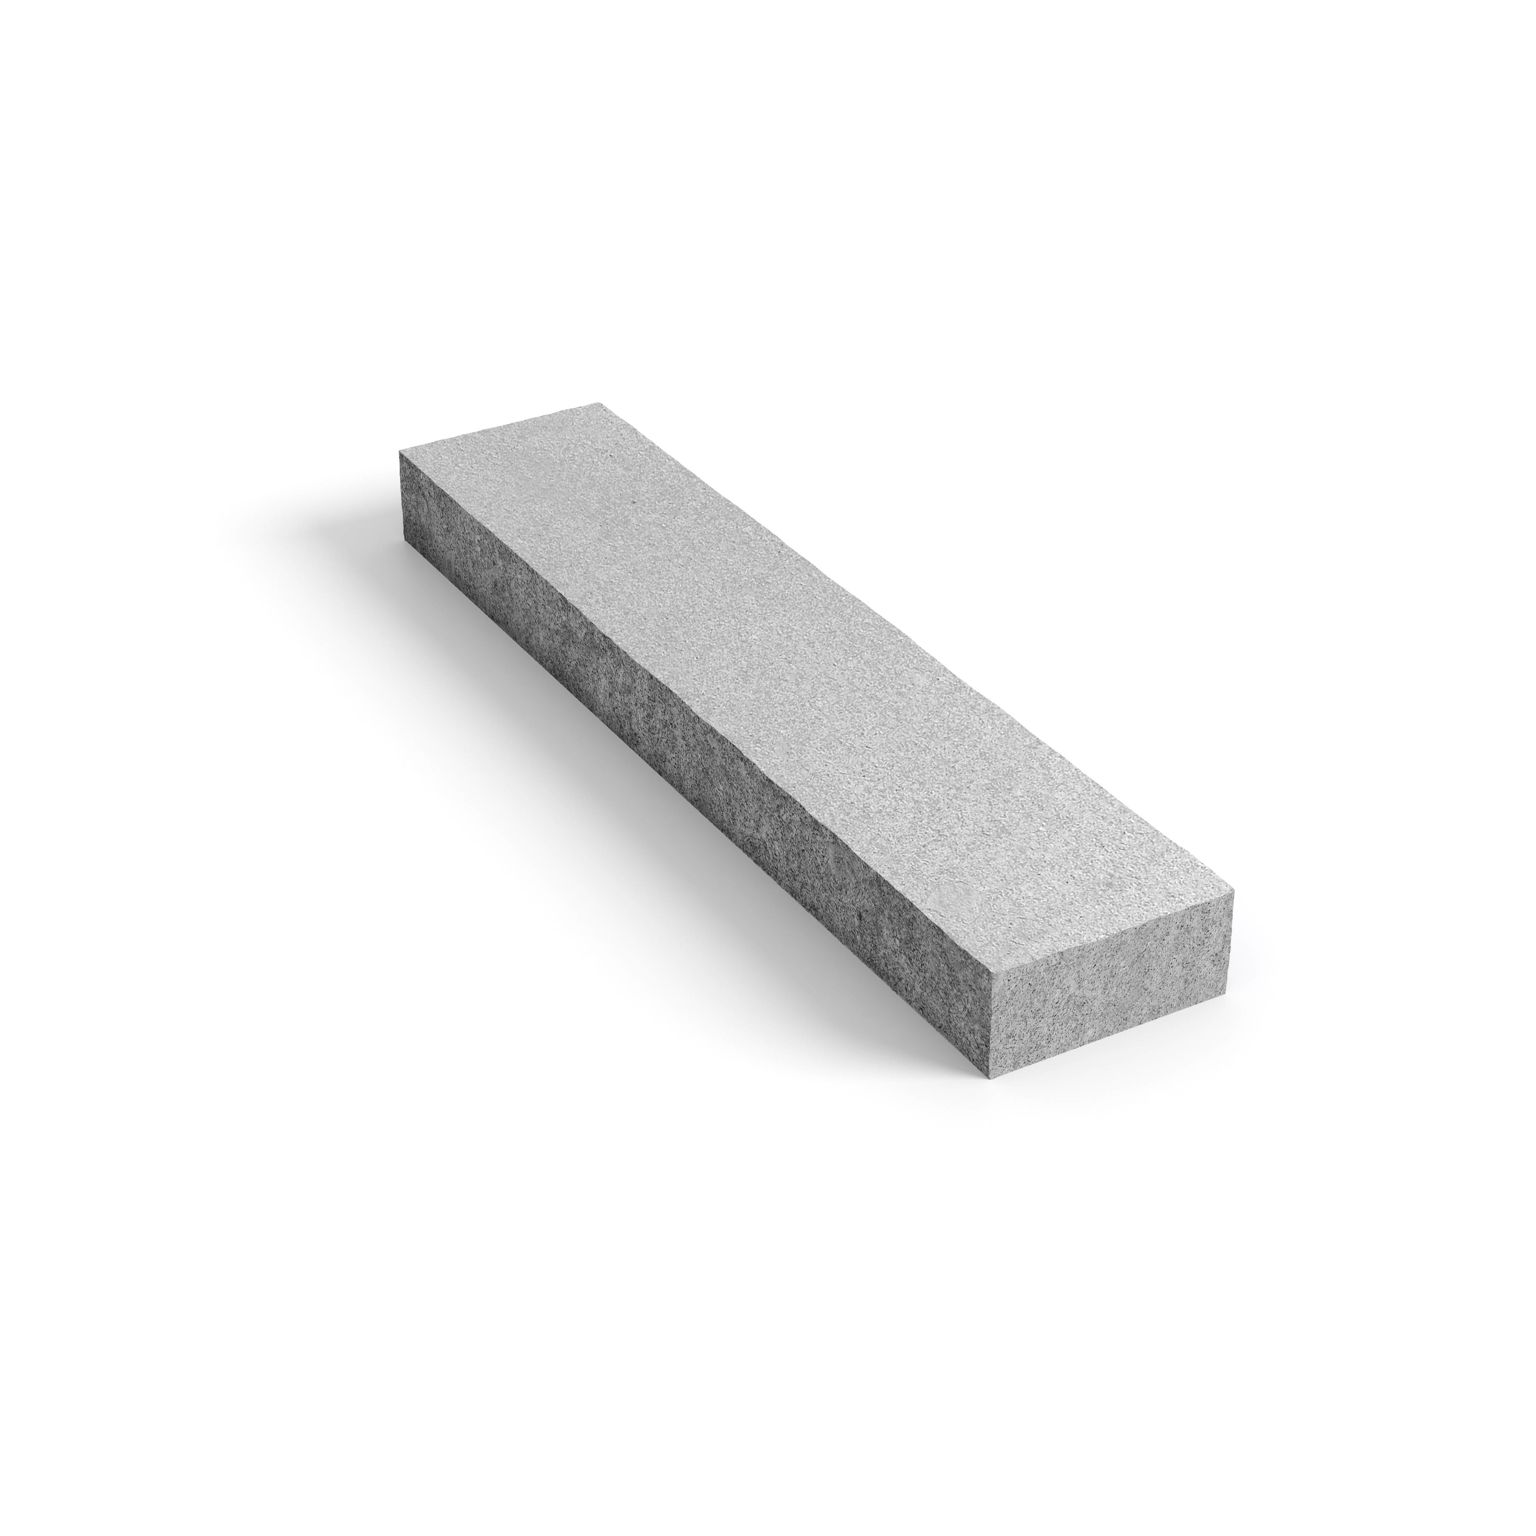 Produktbild på blocksteg i granit med måtten 1500x330x140 mm i färgen Porto grå.